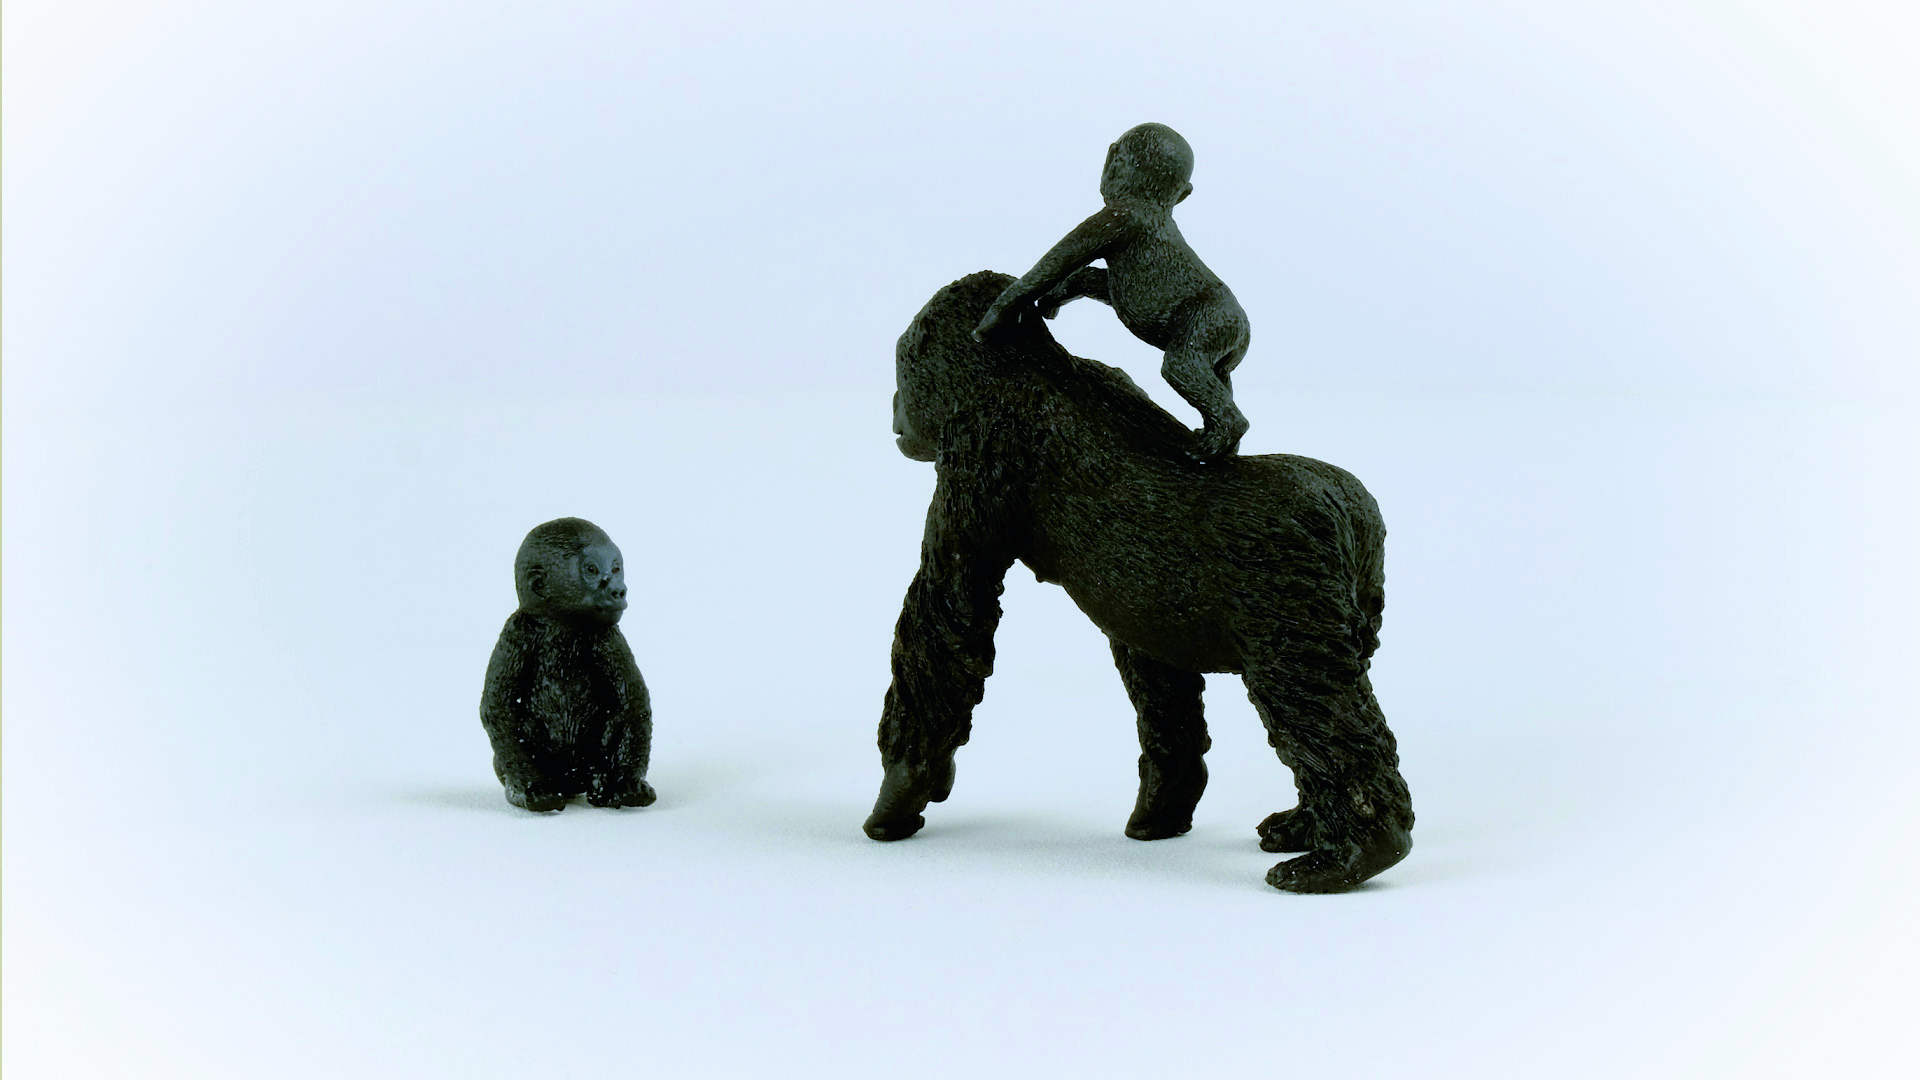 SCHLEICH Wild Life 42601 Flachland Gorilla Spielfigur Schwarz Familie